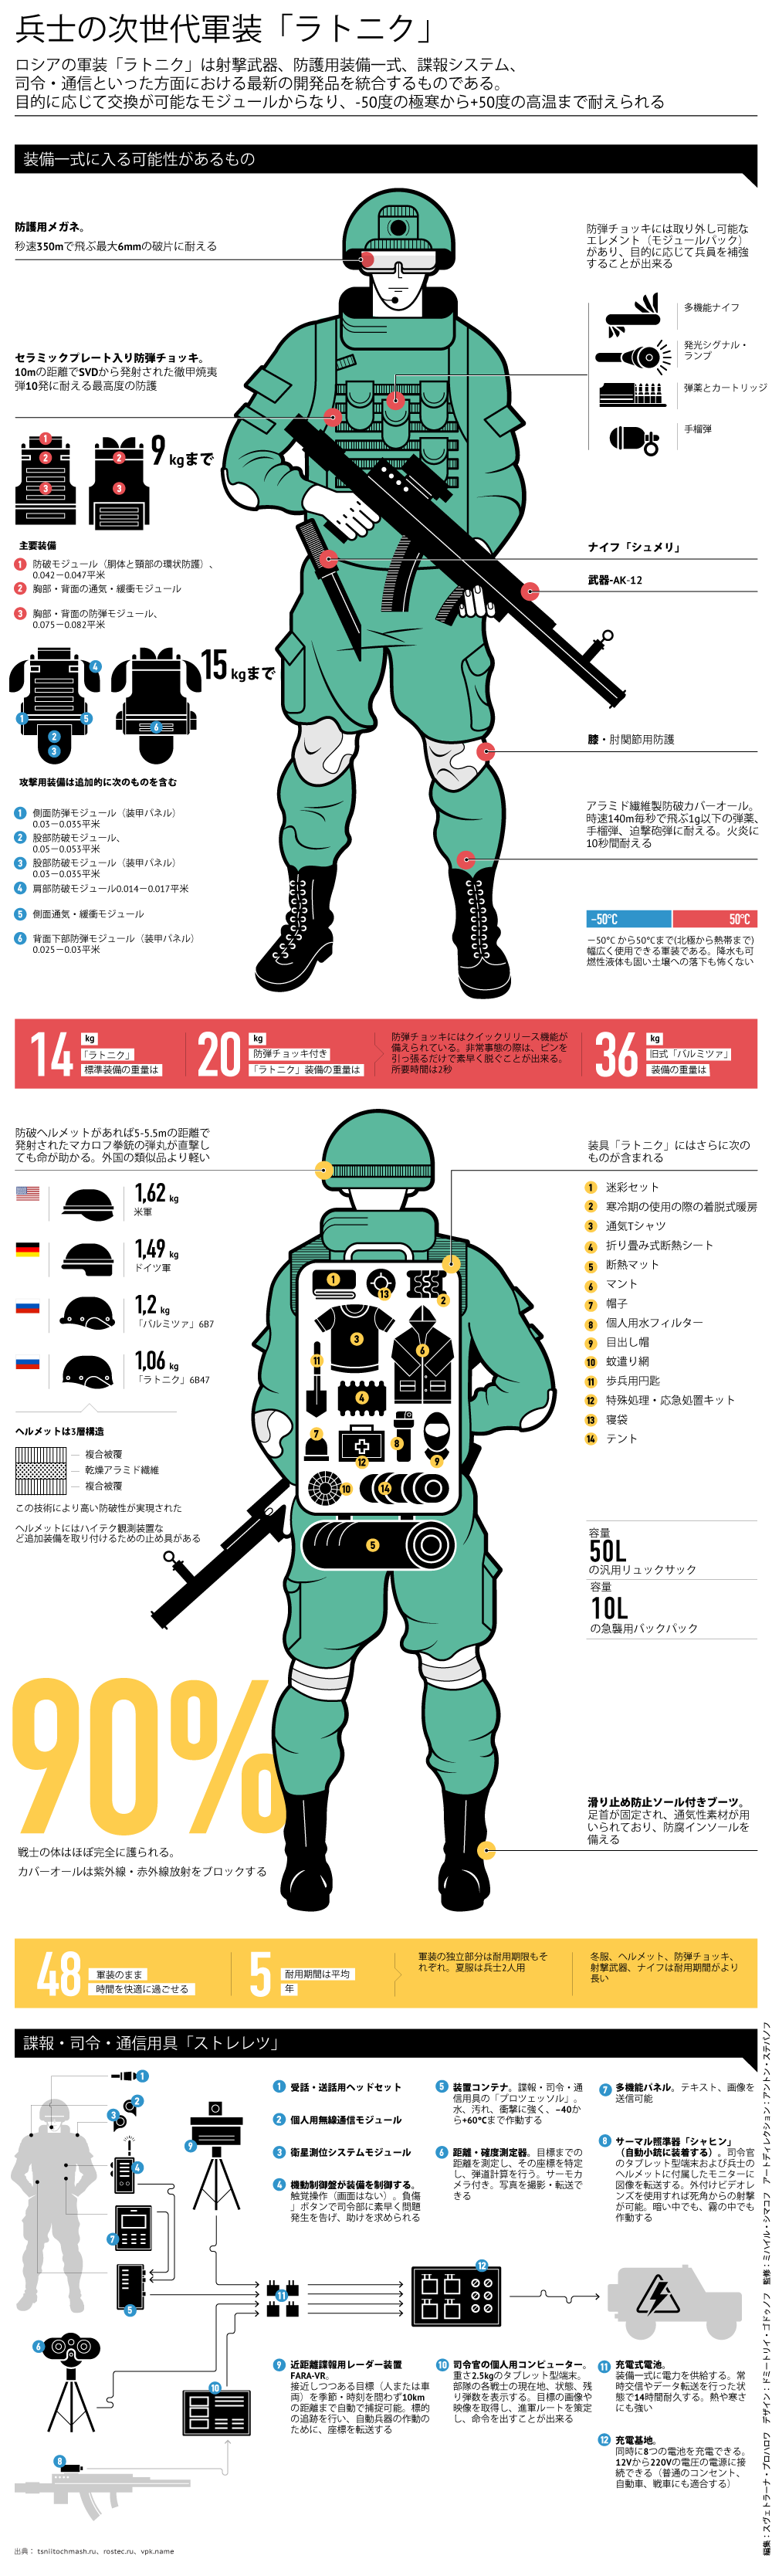 兵士の次世代軍装「ラトニク」 - Sputnik 日本